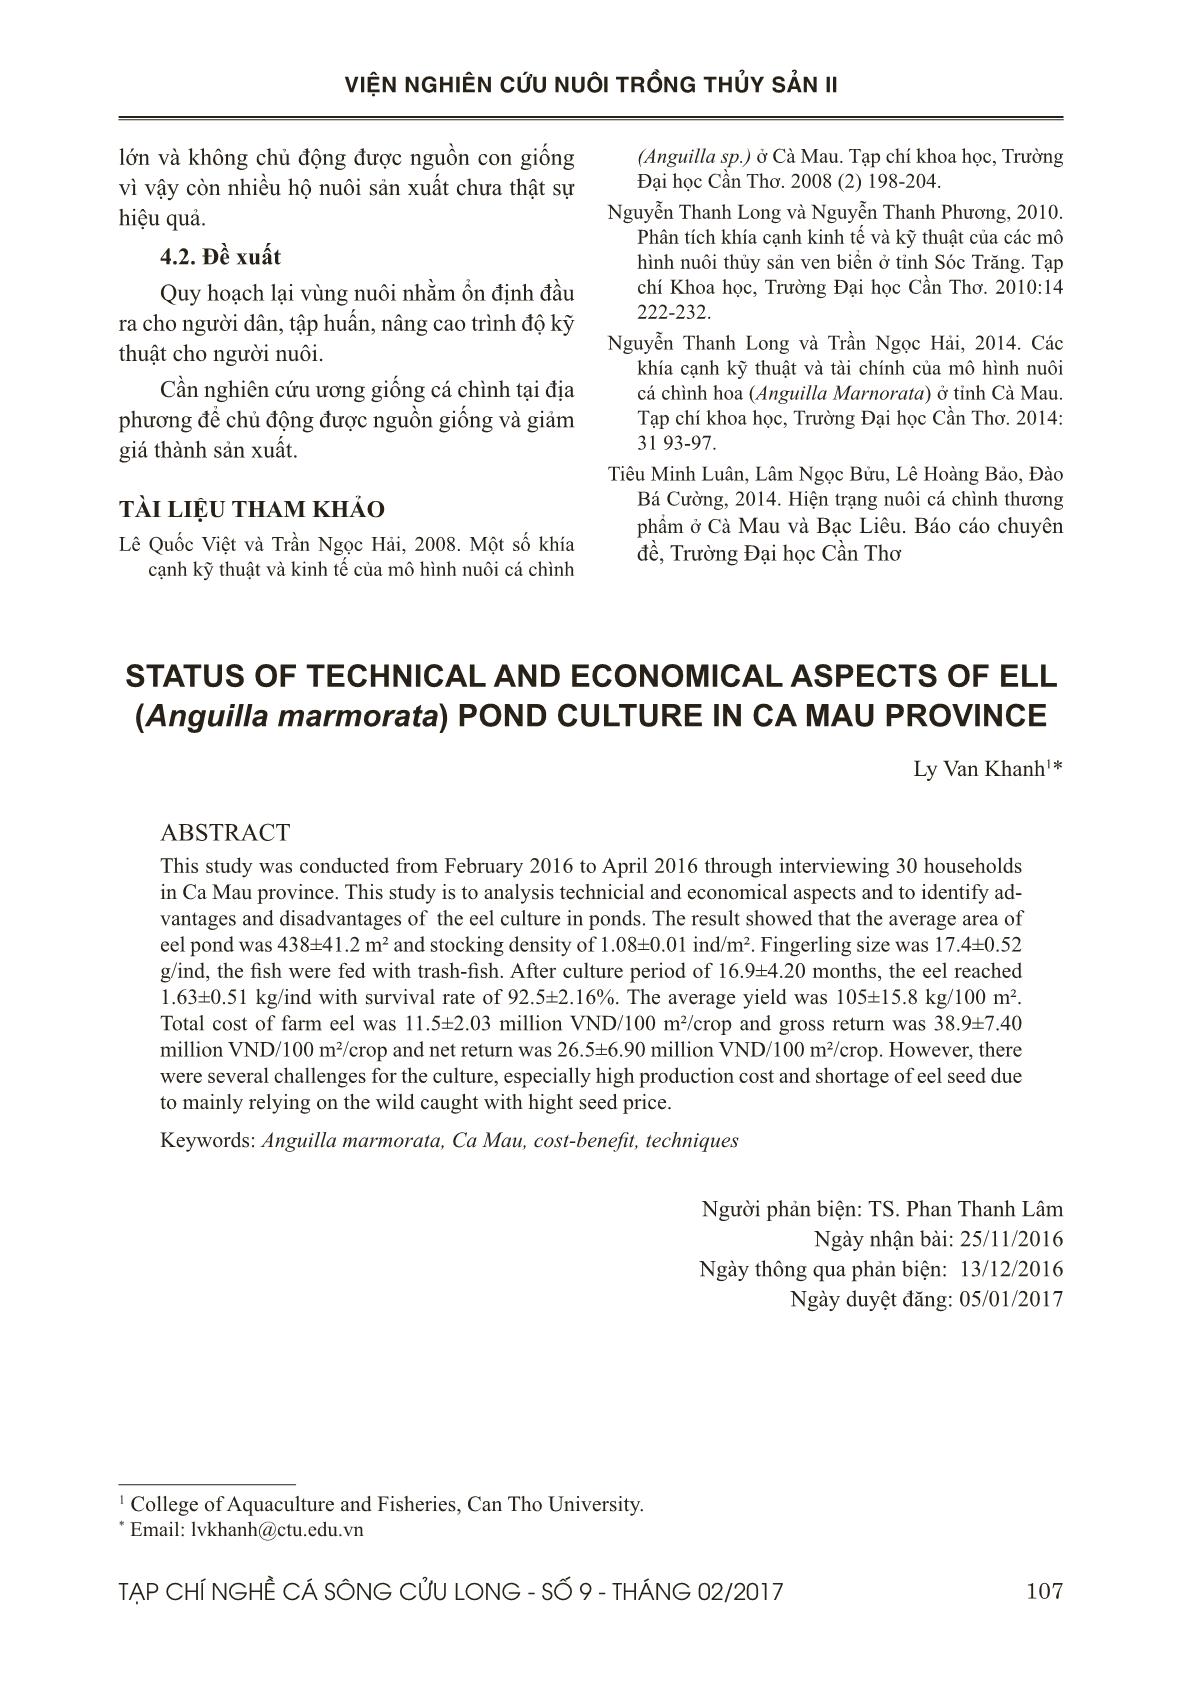 Hiện trạng kỹ thuật và tài chính của mô hình nuôi cá chình (Anguilla marmorata) ở tỉnh Cà Mau trang 8